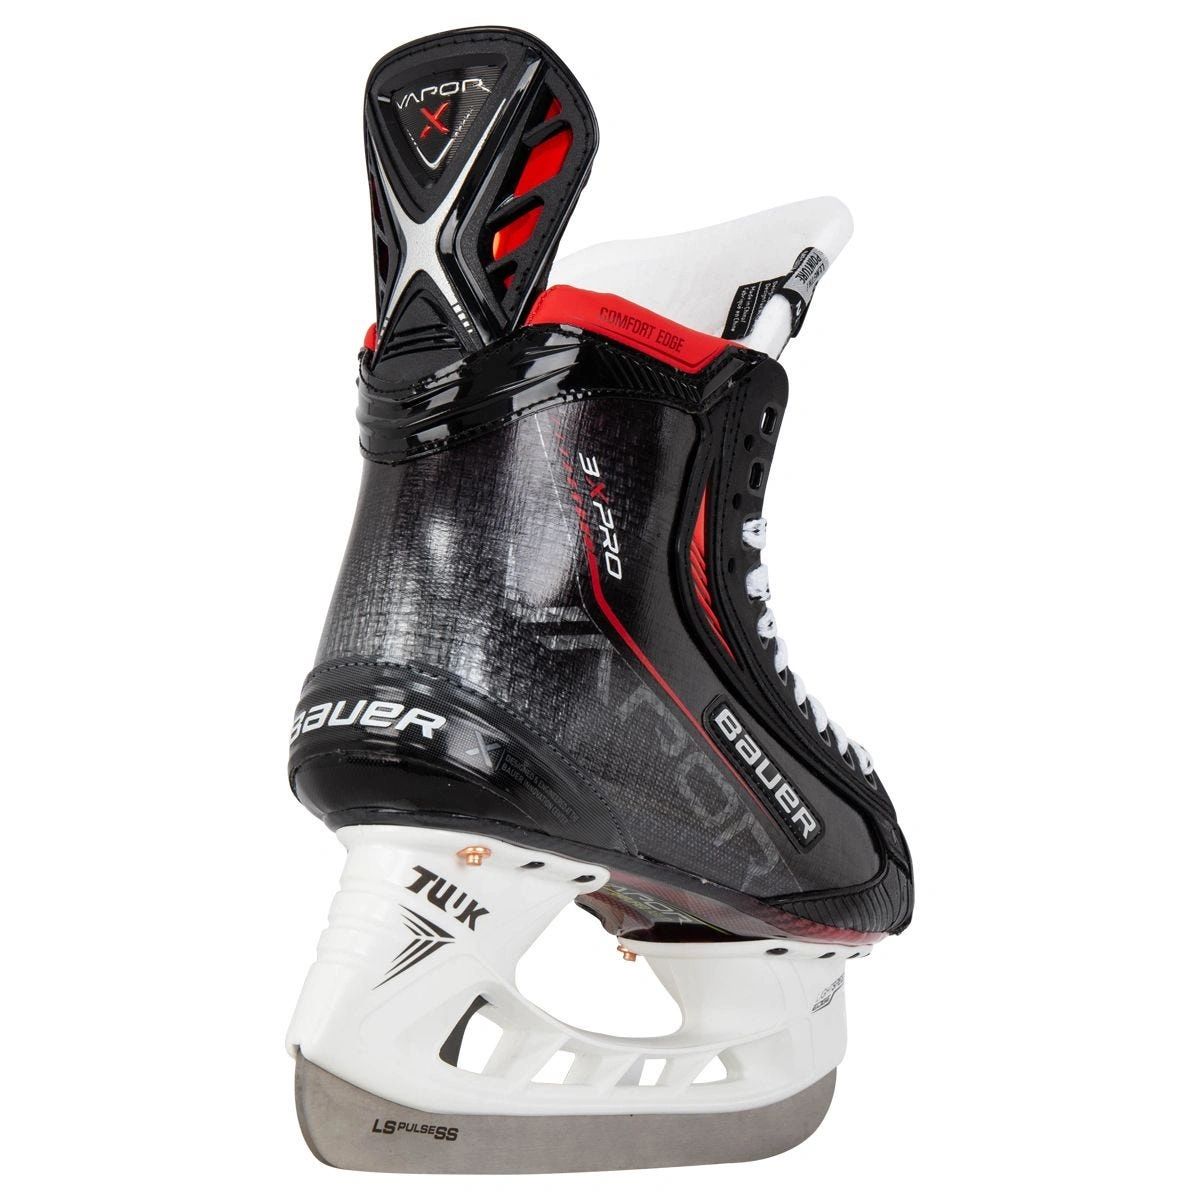 Bauer Vapor 3X Pro Ice Hockey Skates - Senior